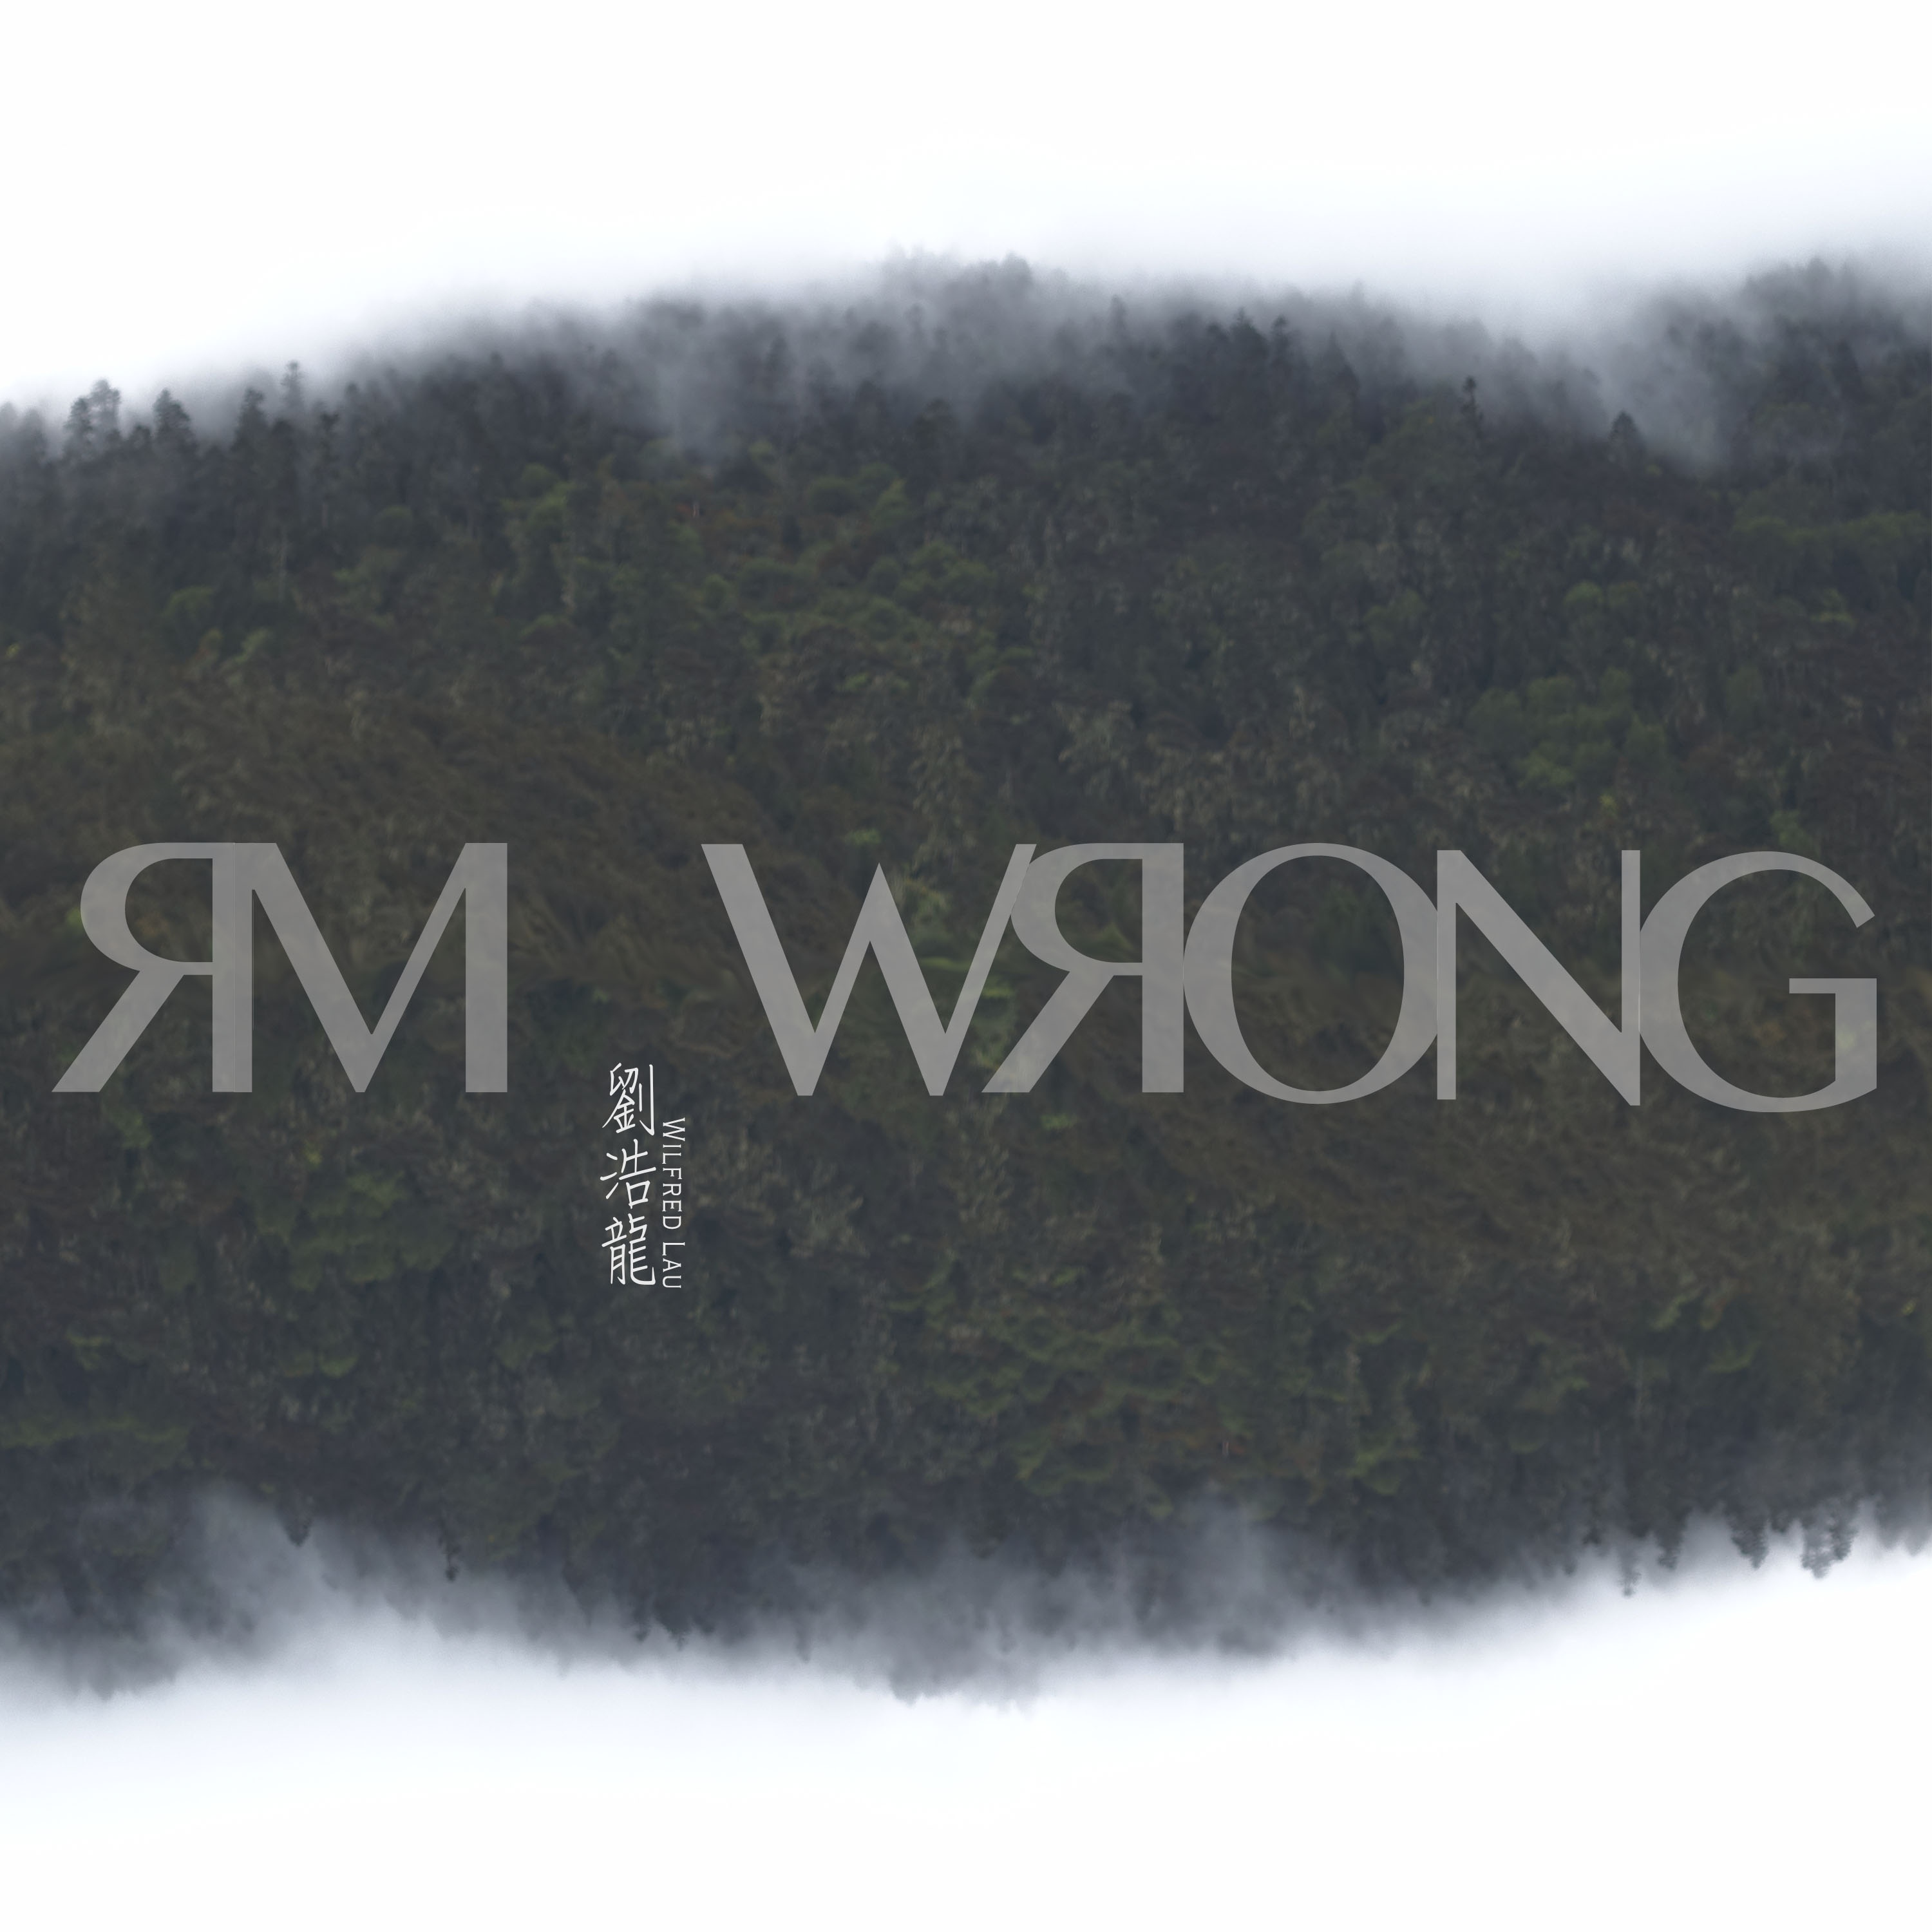 Mr Wrong(劉浩龍演唱歌曲)